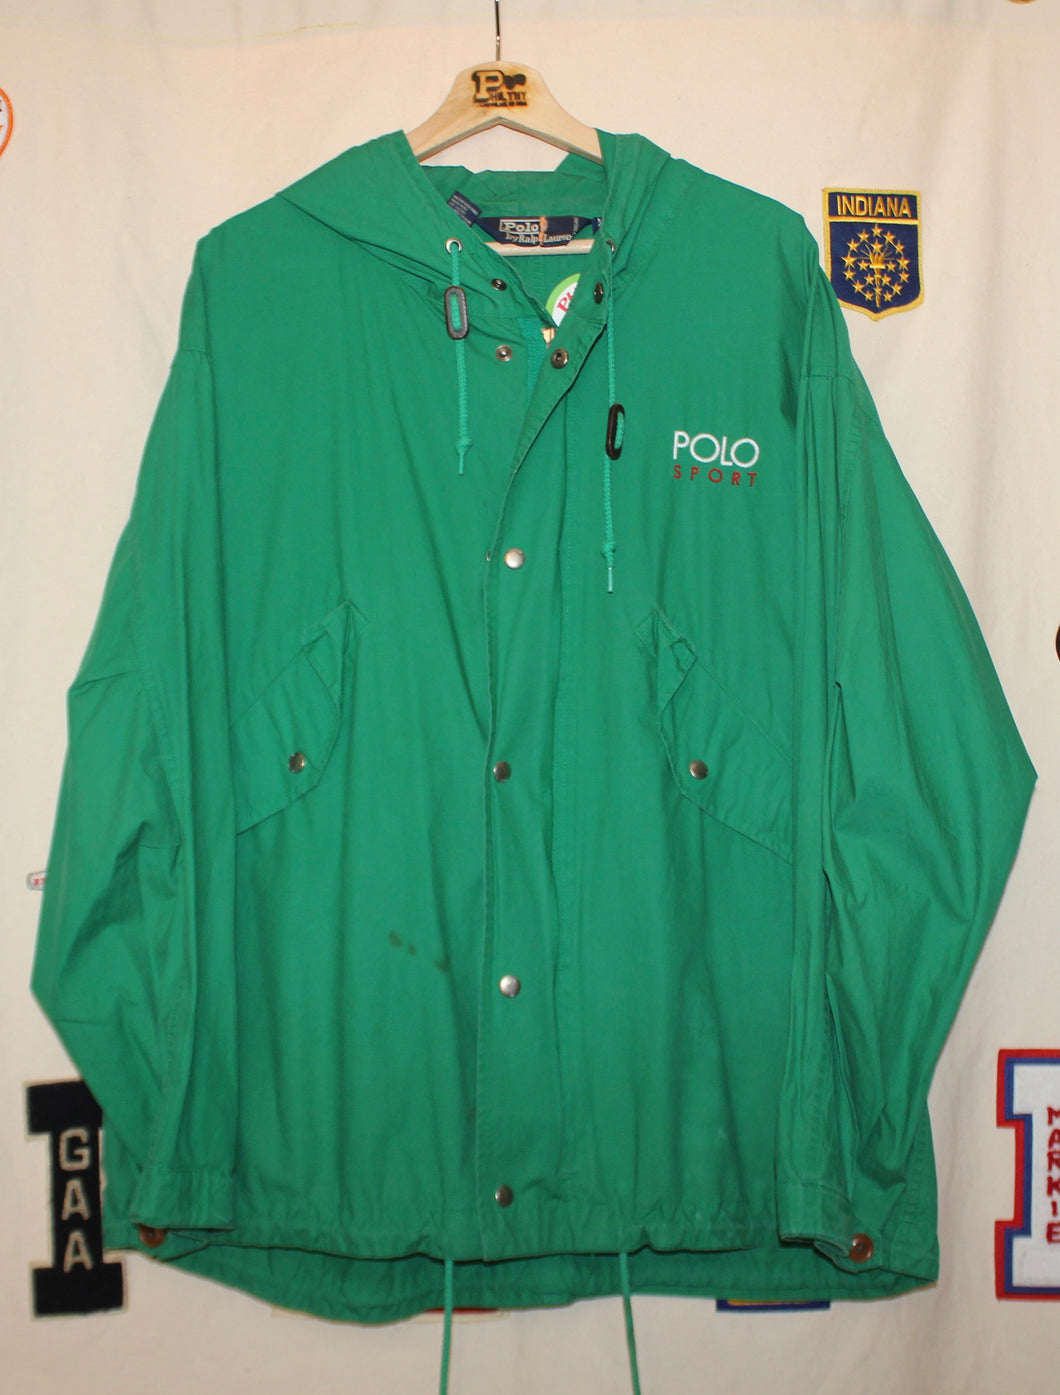 Polo Sport Windbreaker Jacket: M